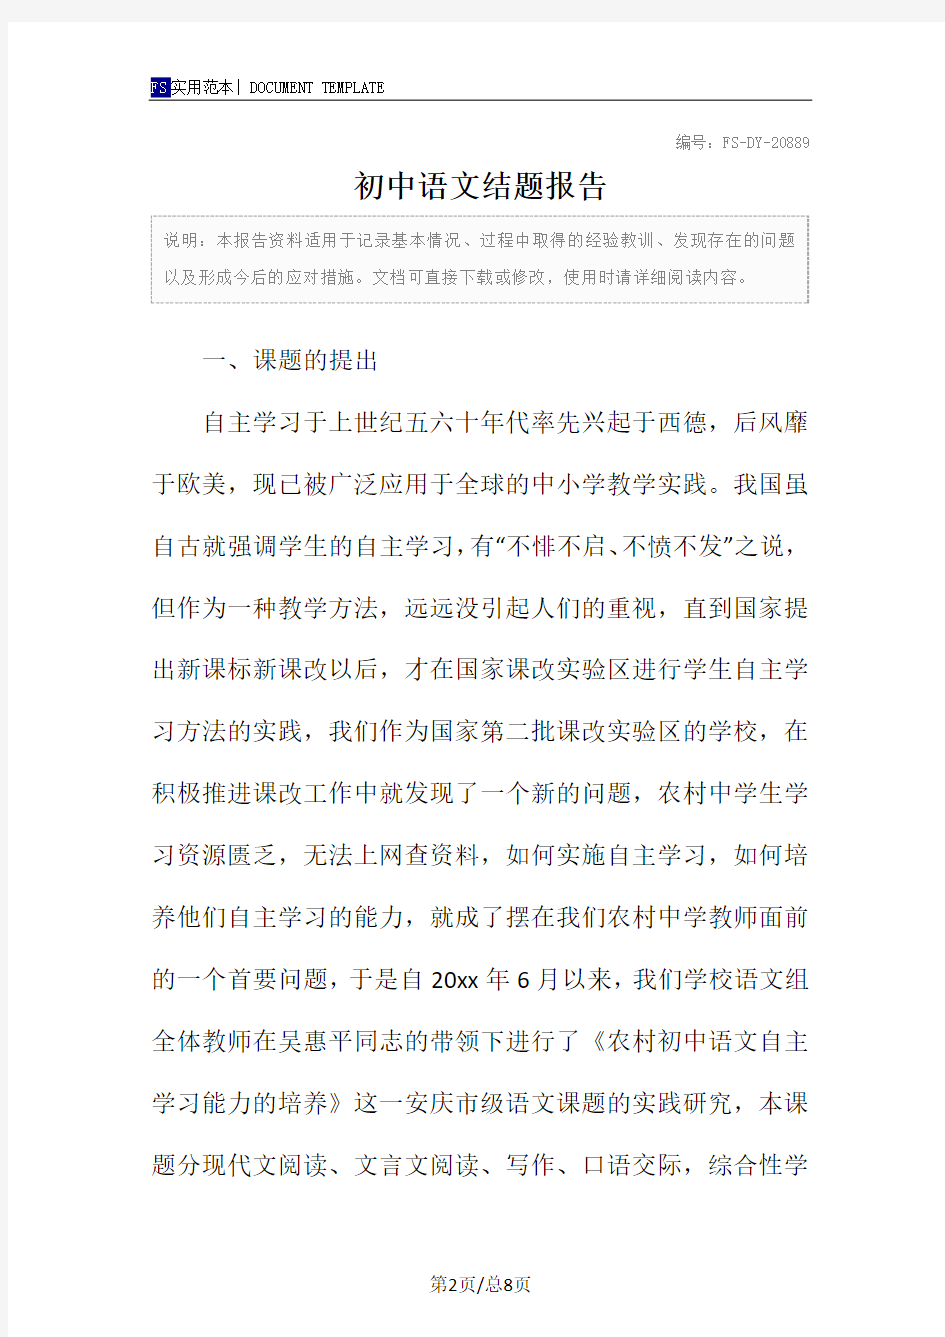 初中语文结题报告范本